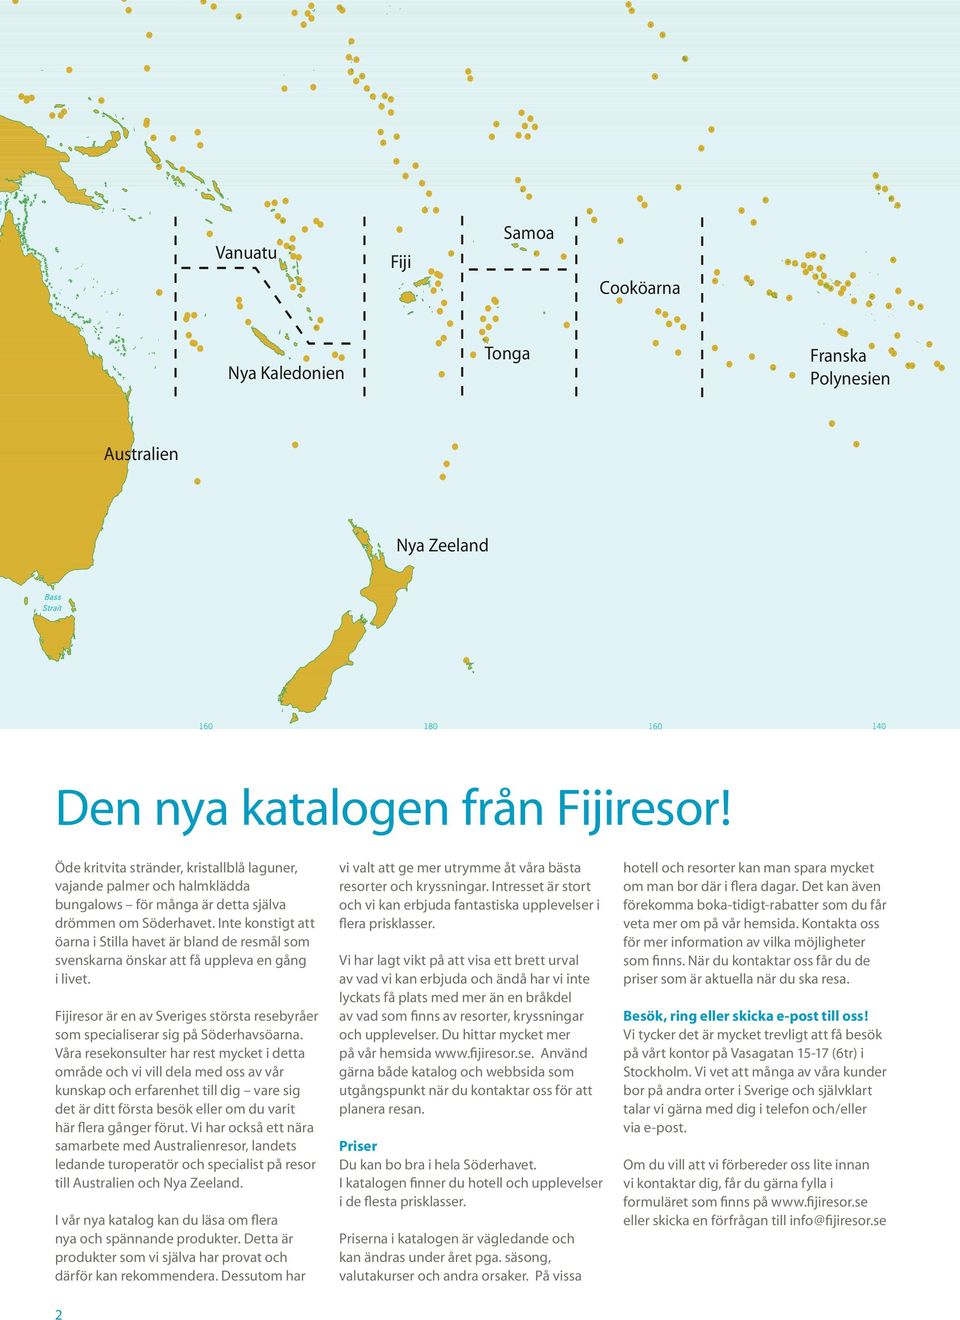 Inte konstigt att öarna i Stilla havet är bland de resmål som svenskarna önskar att få uppleva en gång i livet. Fijiresor är en av Sveriges största resebyråer som specialiserar sig på Söderhavsöarna.